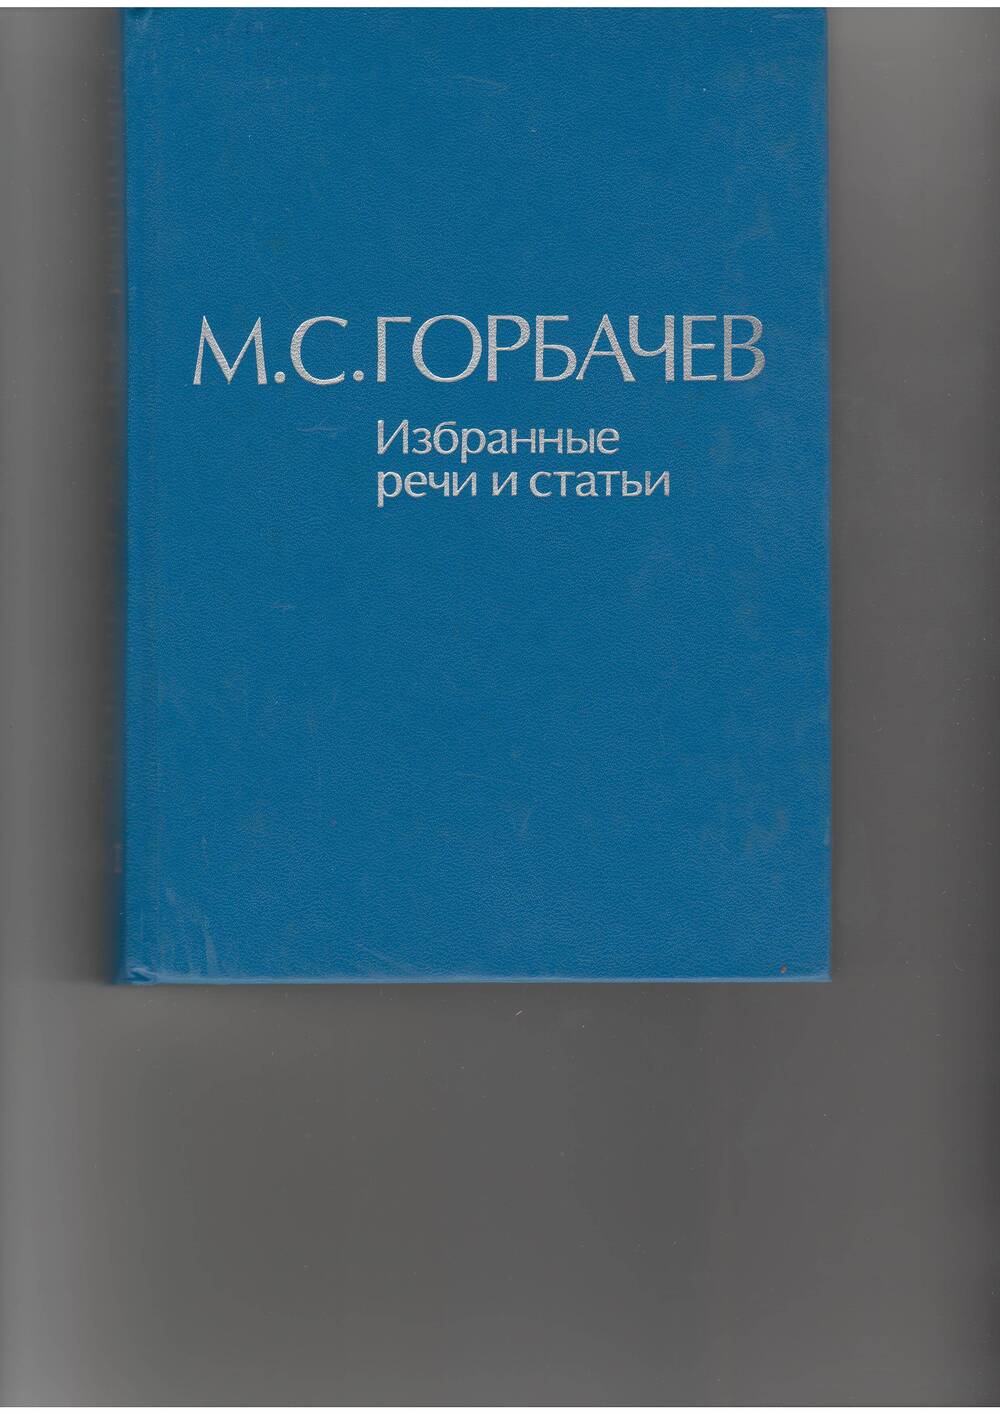 книга  Горбачев М. С. Избранные речи и статьи.т.1. - М: Наука,1987.